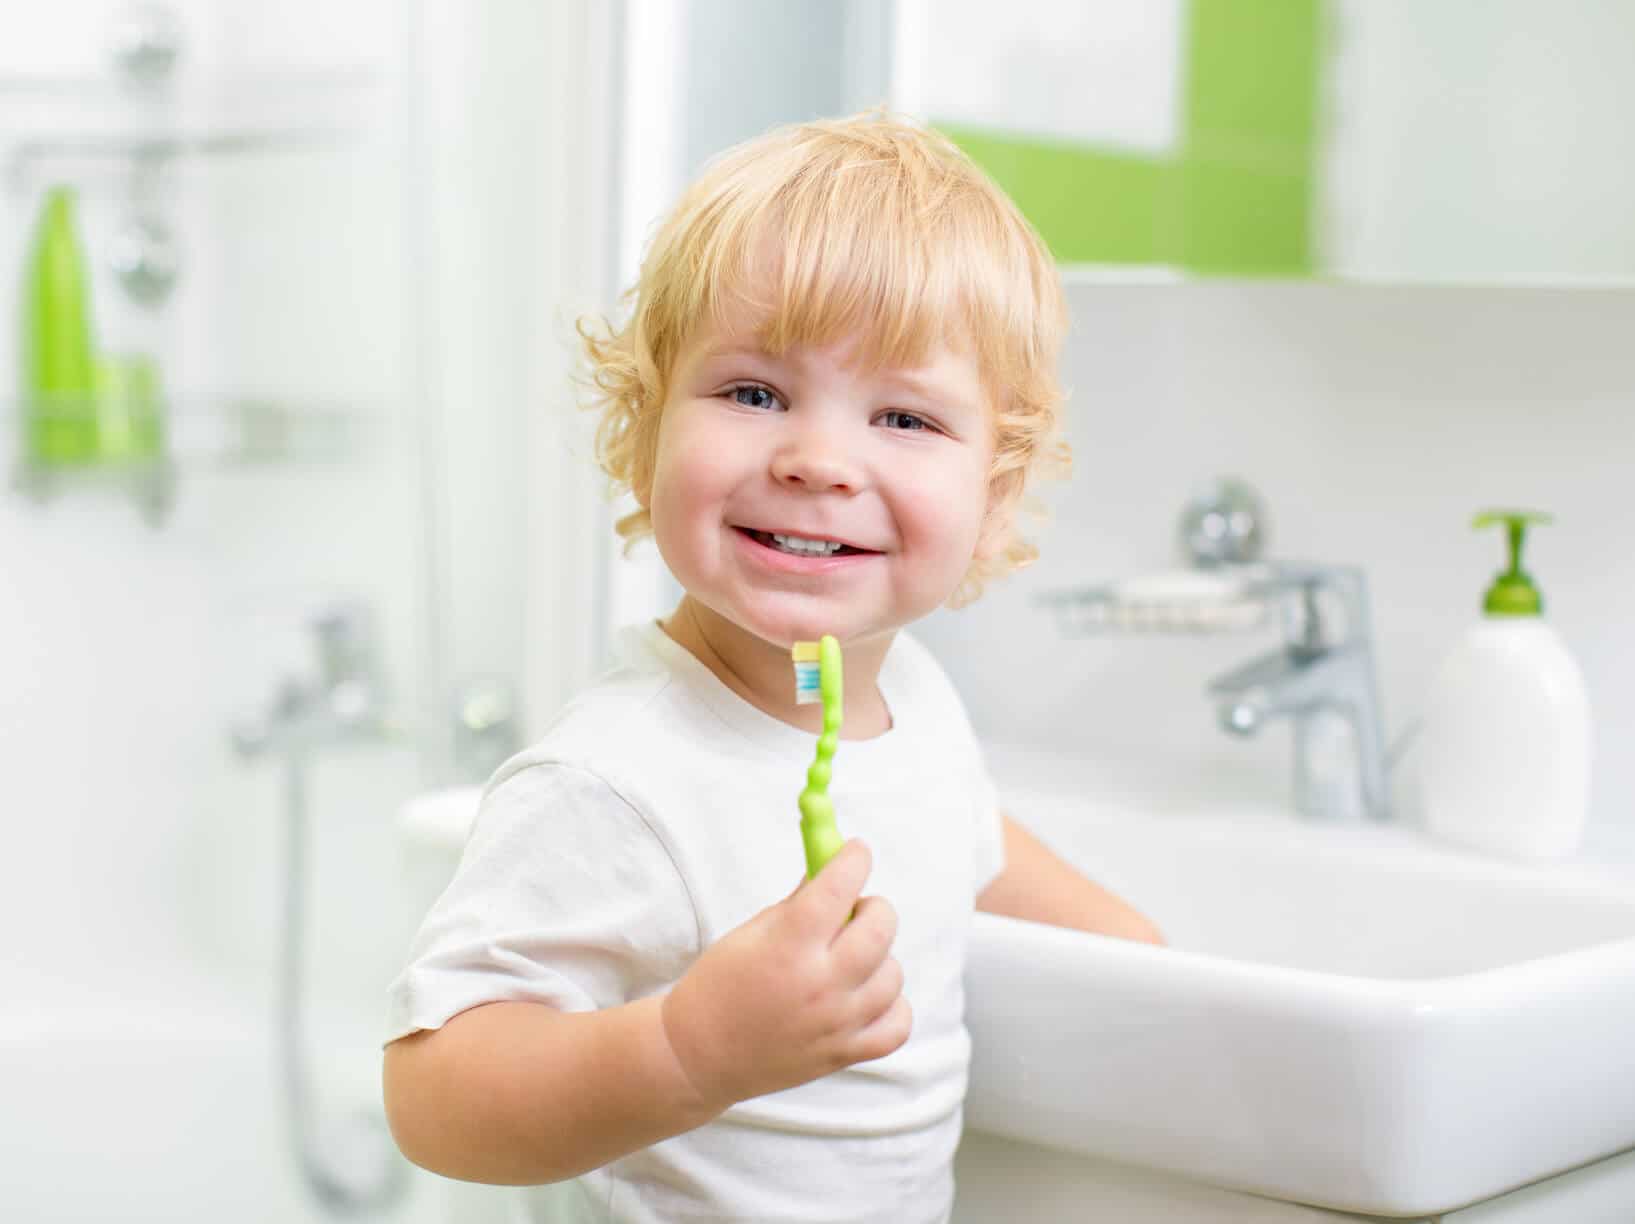 GigglesVille Pediatric Dentisty Toddler Prushing Teeth